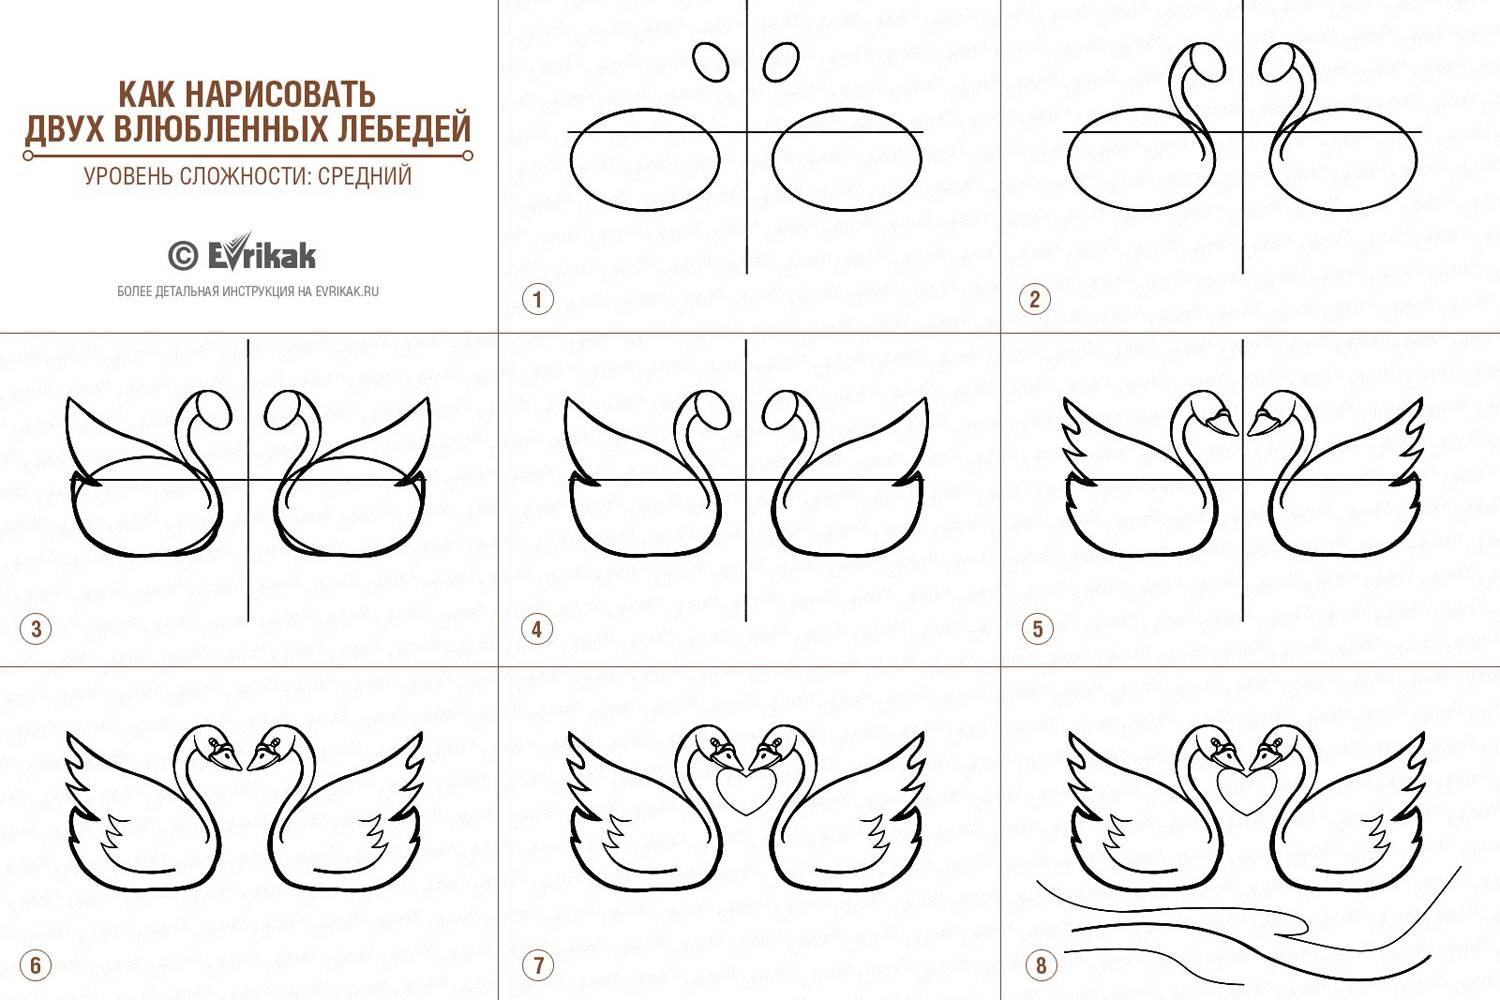 collage_Как нарисовать двух влюбленных лебедей(уровень сложности средний)